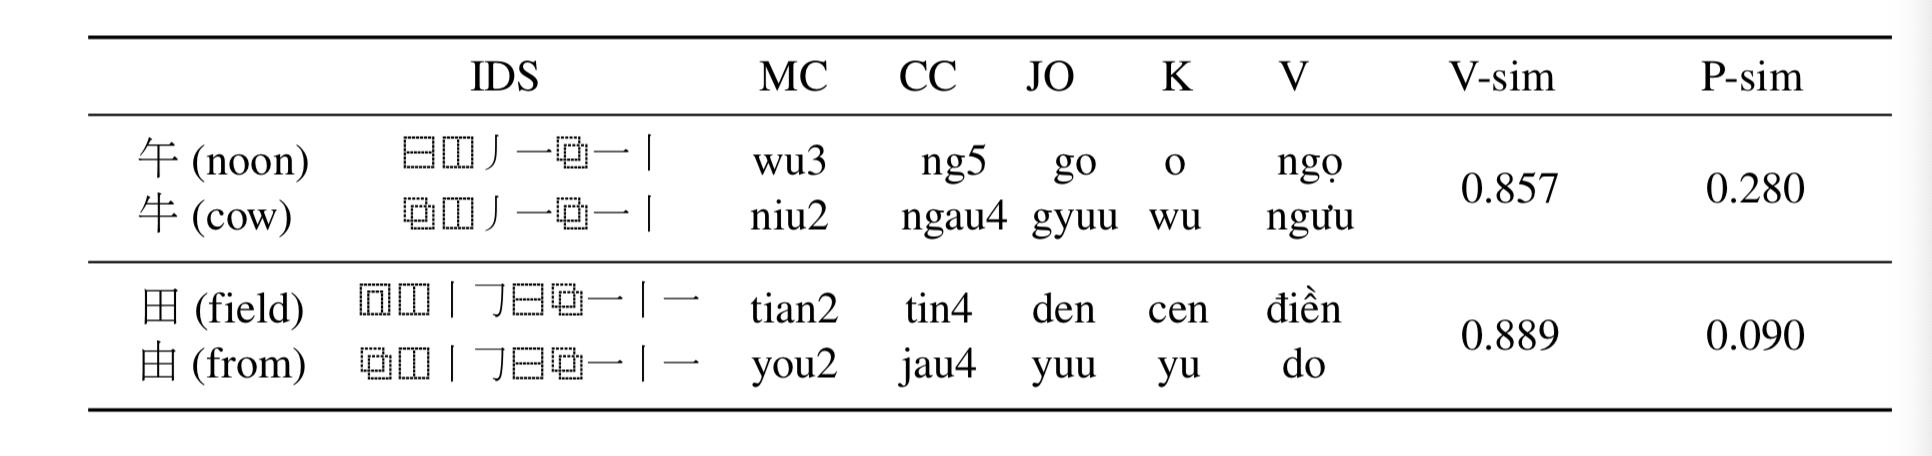 中文纠错（Chinese Spelling Correct）最新技术方案总结 - 文章图片